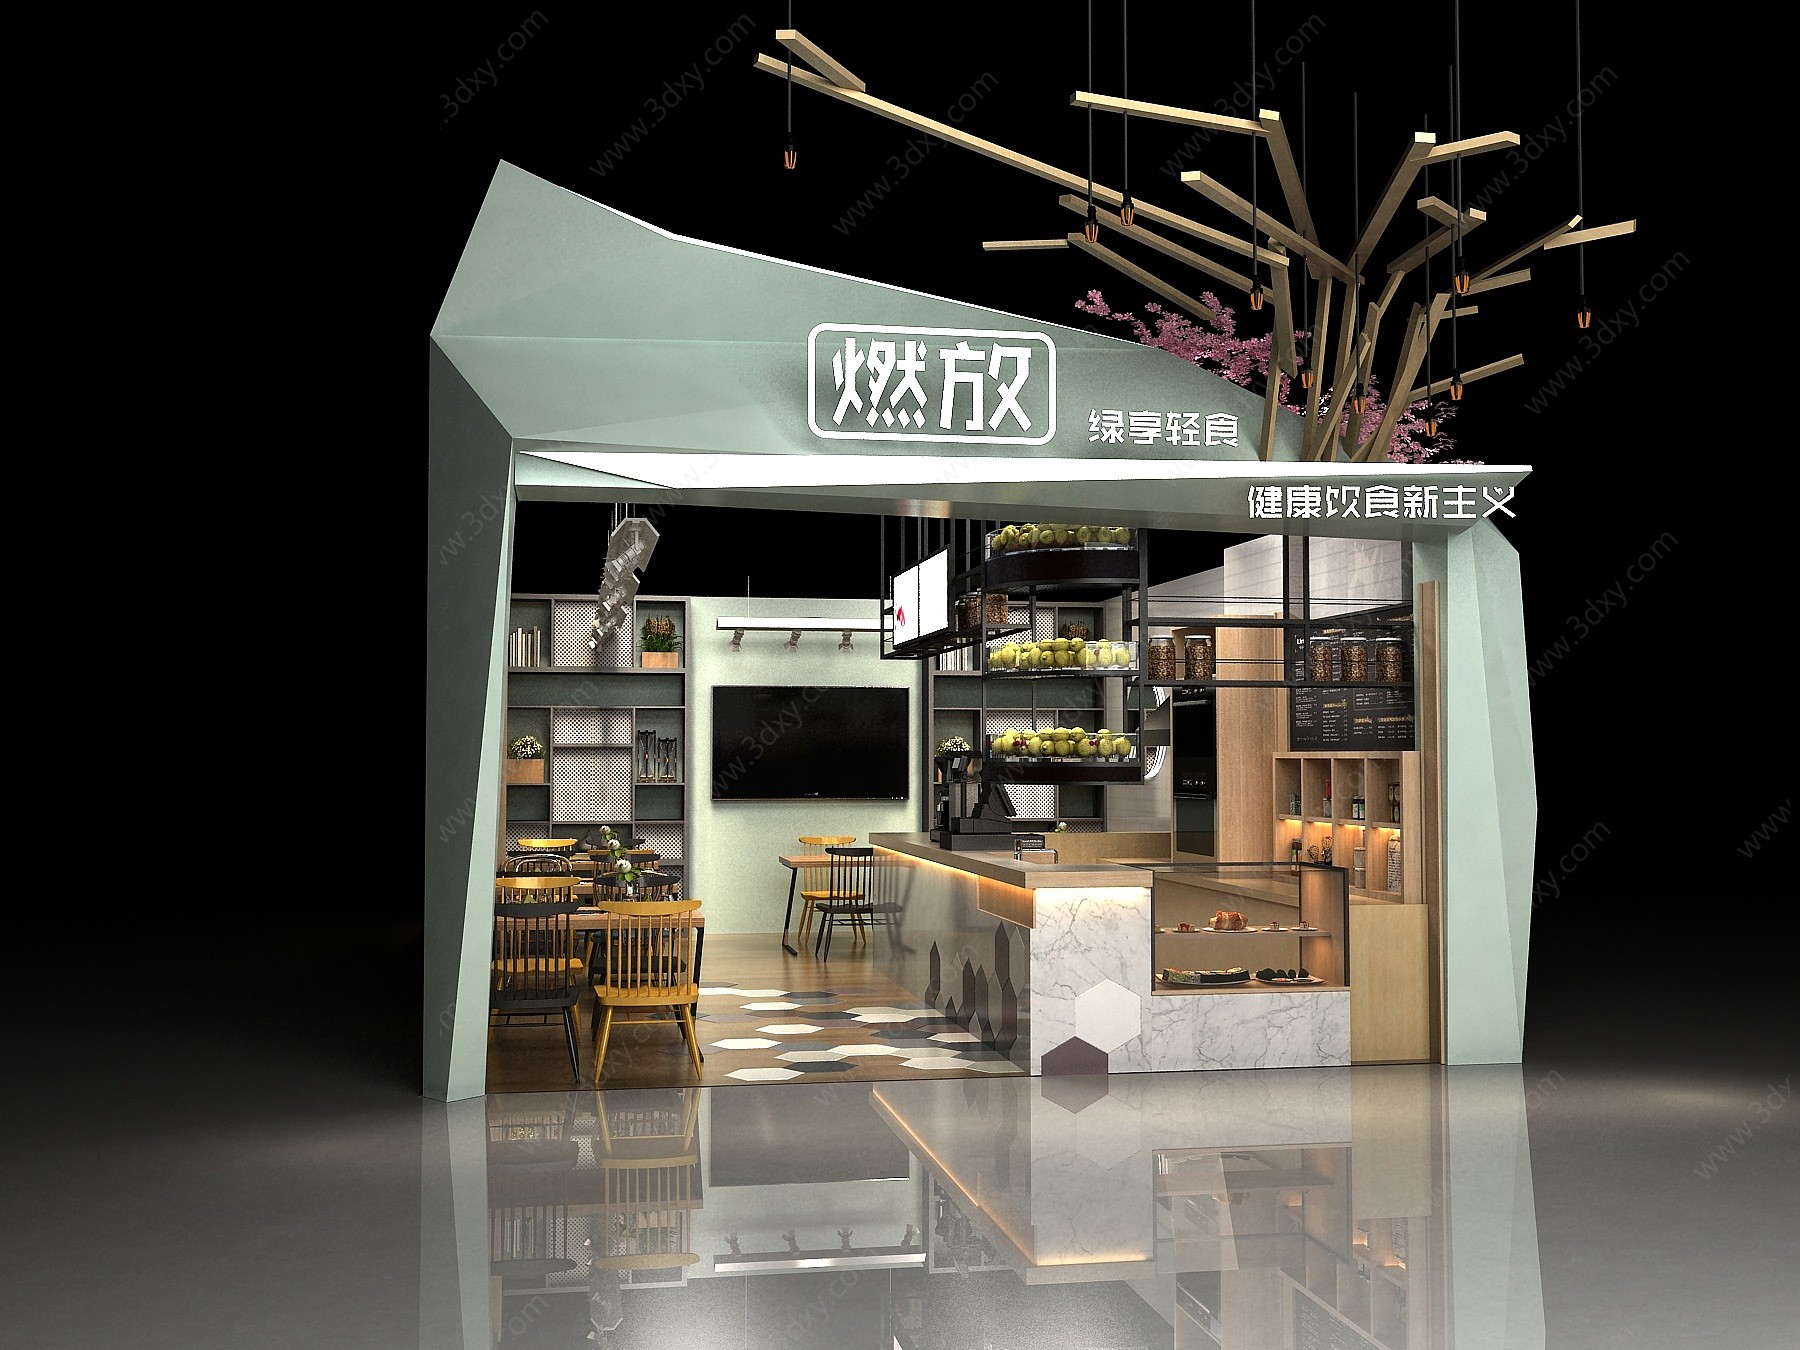 现代轻食店铺设计3D模型